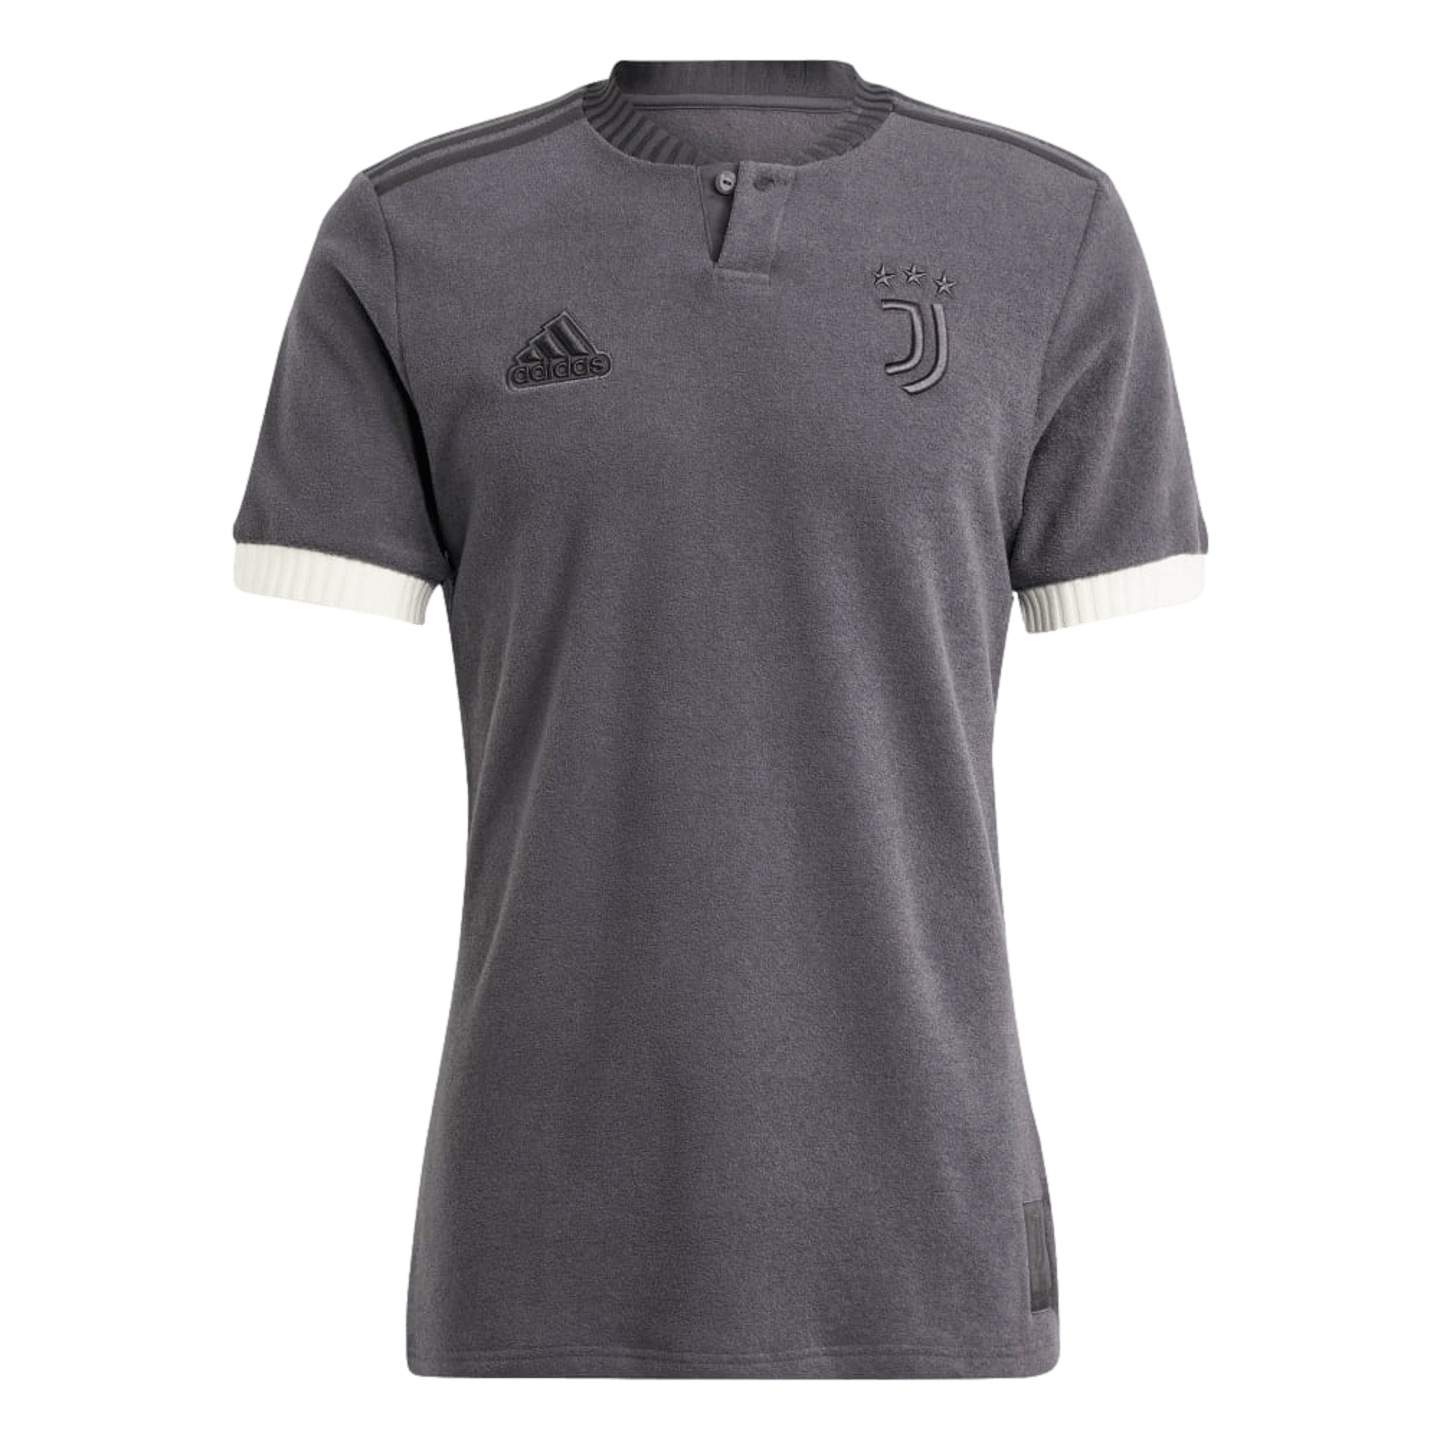 Adidas Juventus 23/24 Lifestyler Tercera camiseta